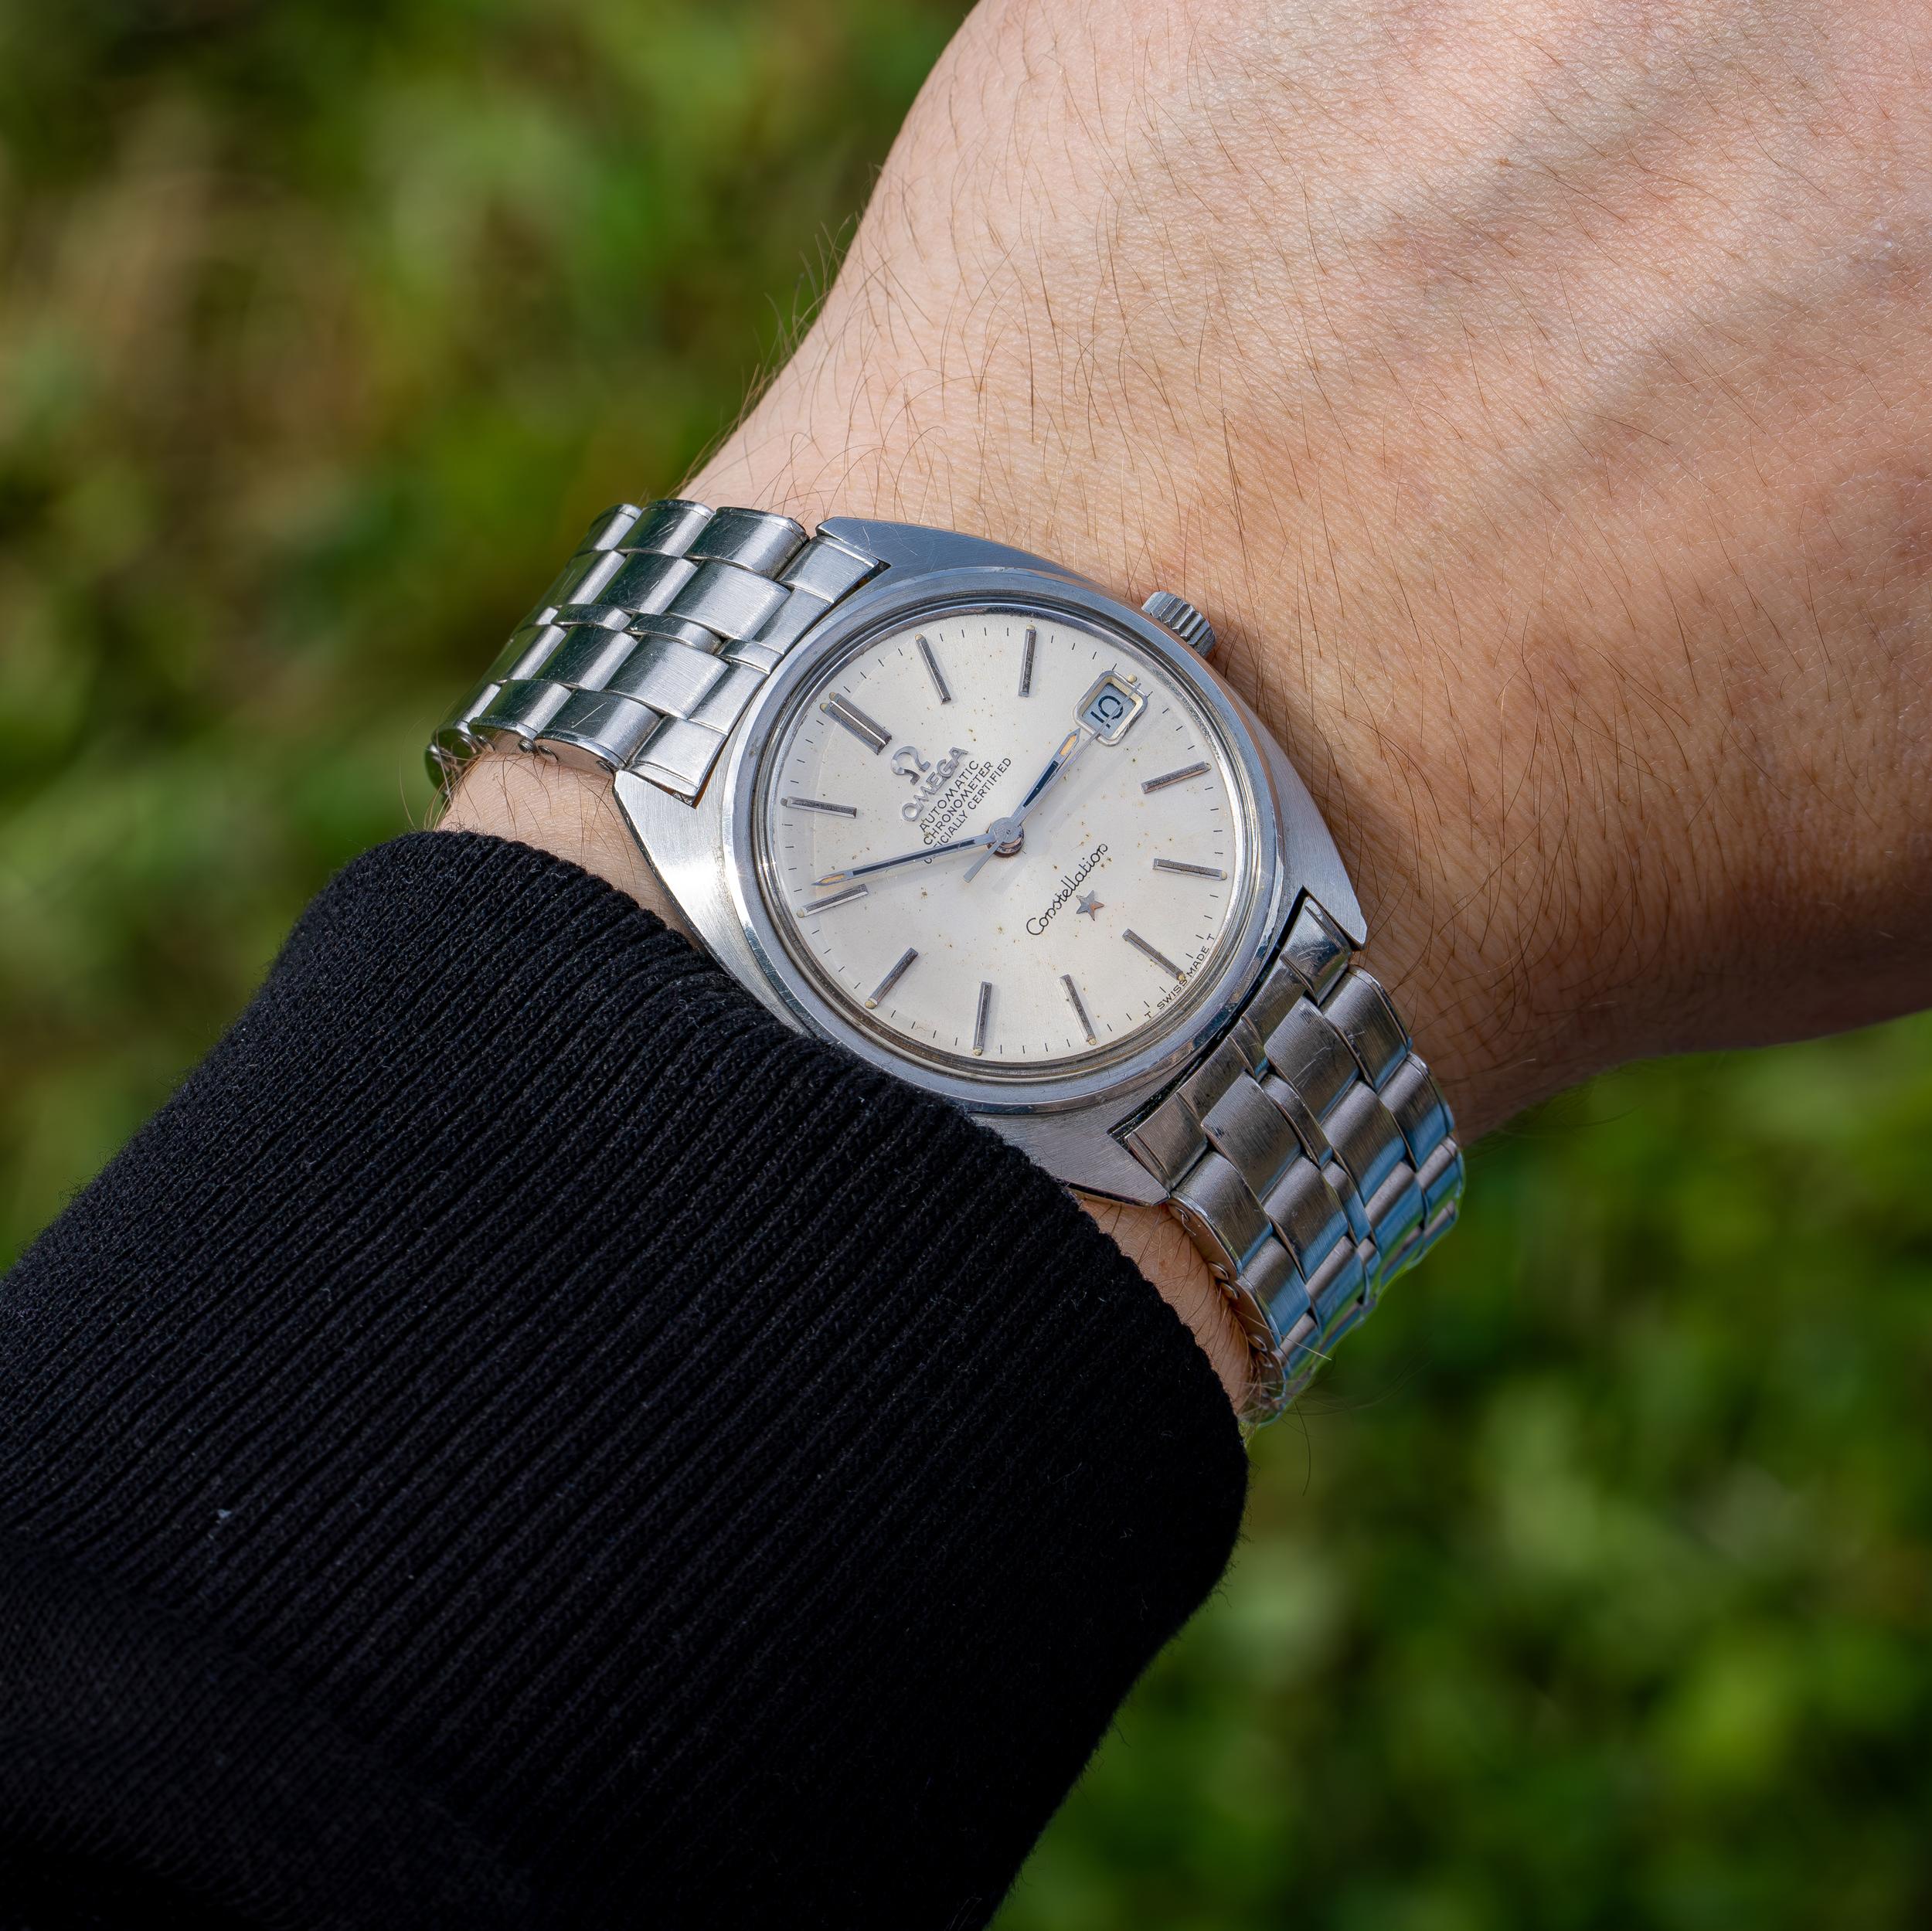 Montre Omega Constellation Automatic Vintage en acier inoxydable.

Fabriqué en Suisse, Circa 1960's
Diamètre du boîtier : 35 mm
Mouvement : Mécanique à remontage automatique
Matériau du boîtier : Acier inoxydable
Matériau du bracelet de montre :